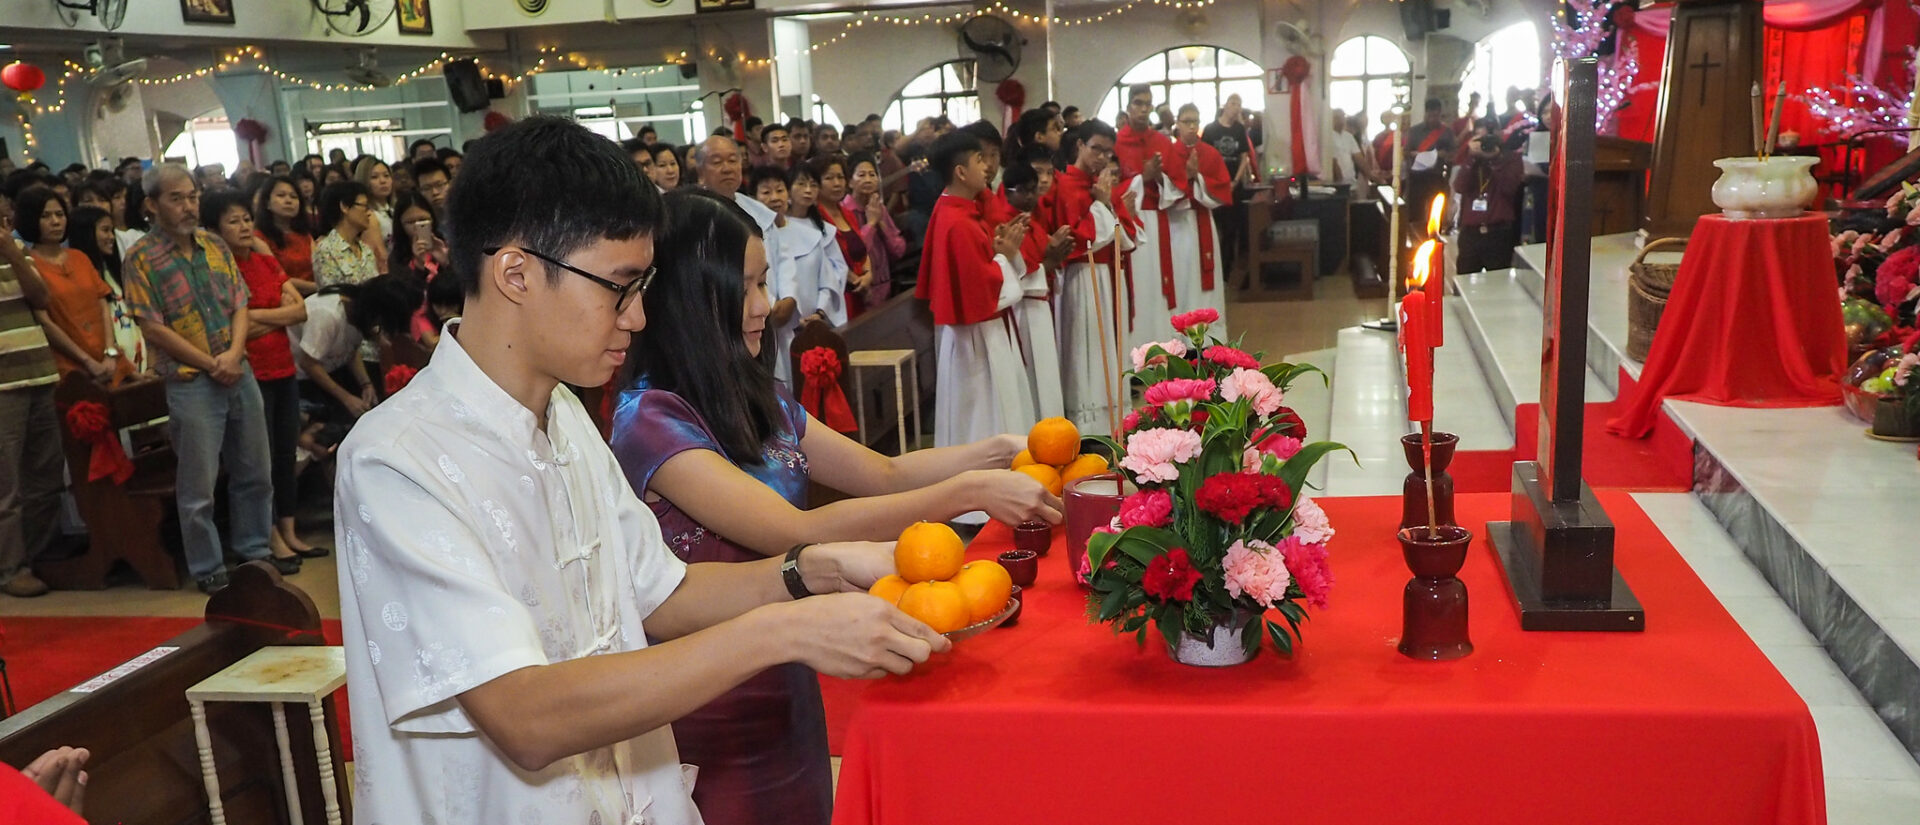 Le nombre de catholiques a augmenté en Asie (ici en Chine) | © John Ragai/Flickr/CC BY 2.0